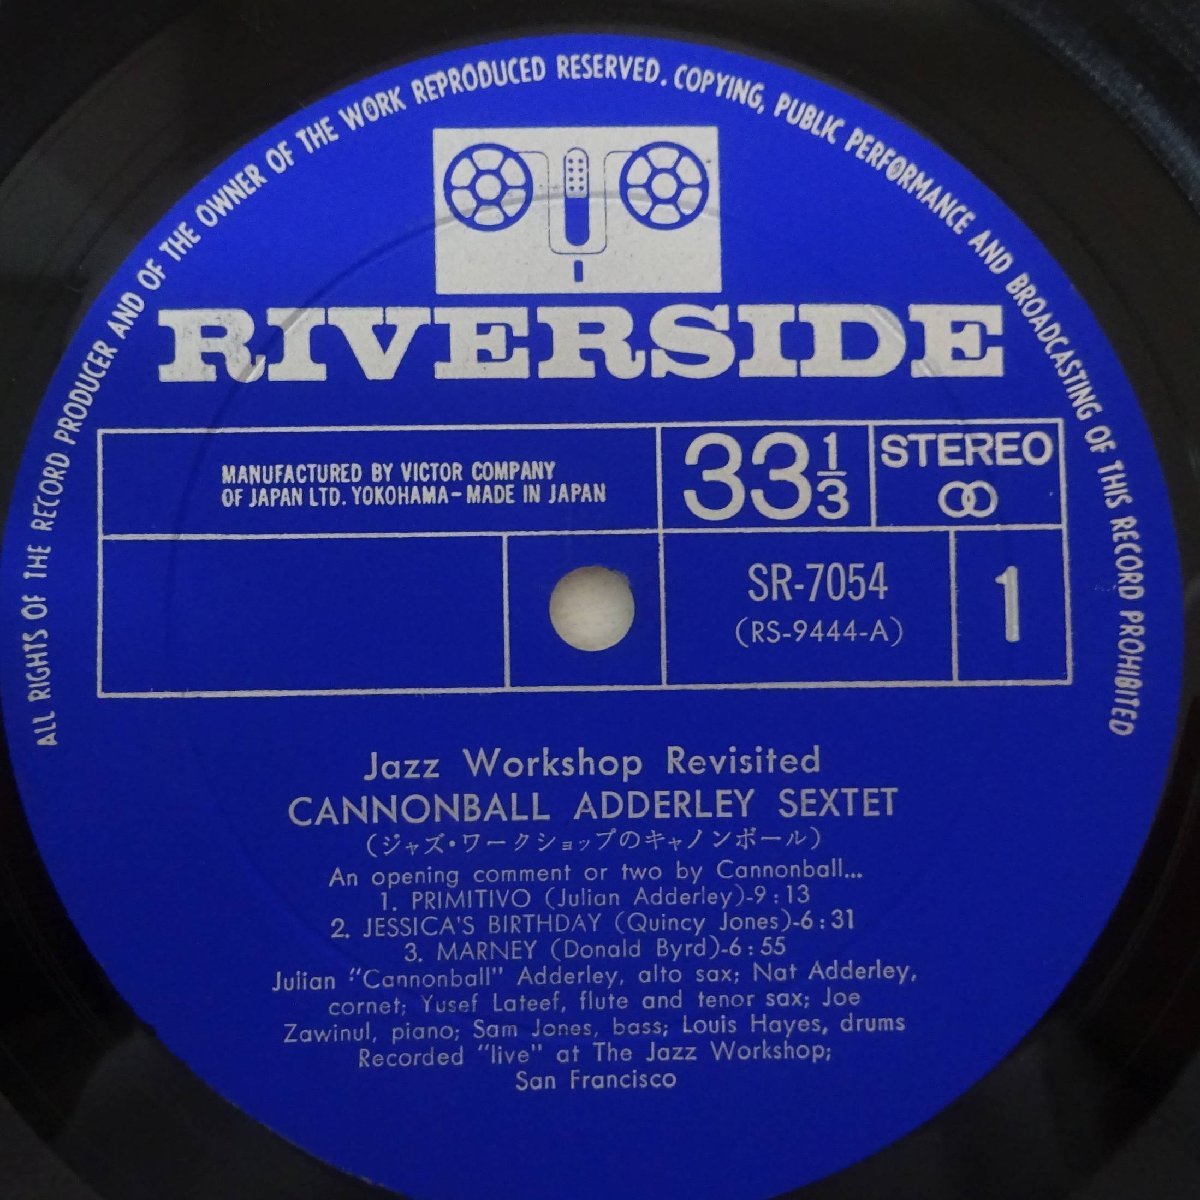 14025556;【帯付/RIVERSIDE/ペラジャケ】Cannonball Adderley Sextet / Jazz Workshop Revisited ジャズ・ワークショップのキャノンボール_画像3